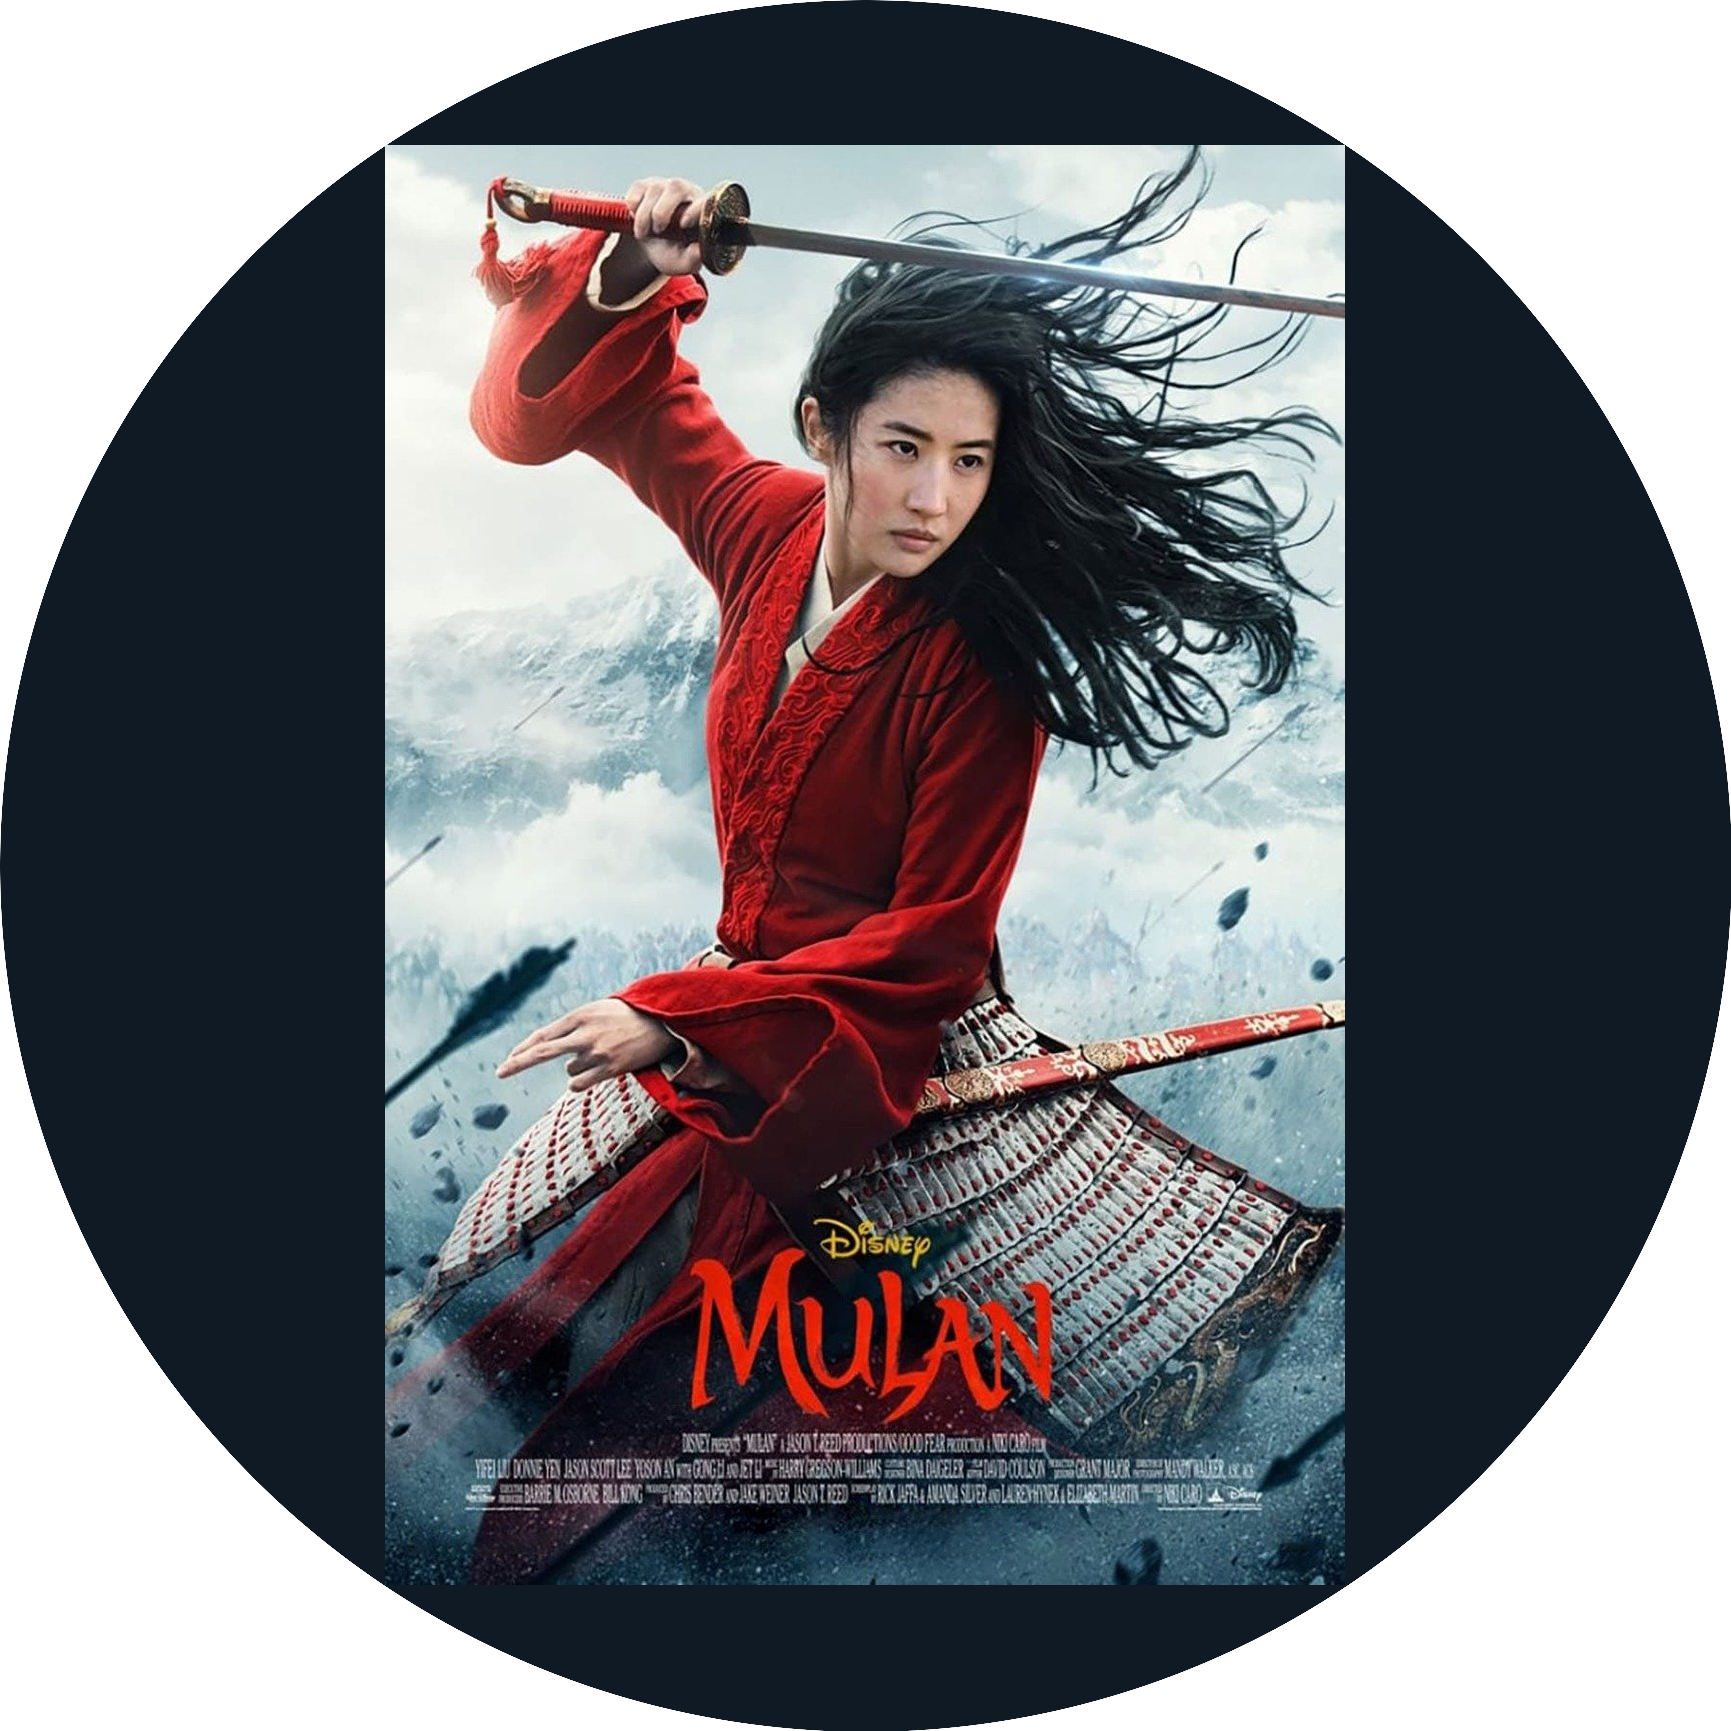 Mulan Movie Poster Edible Cake Topper Image ABPID56677